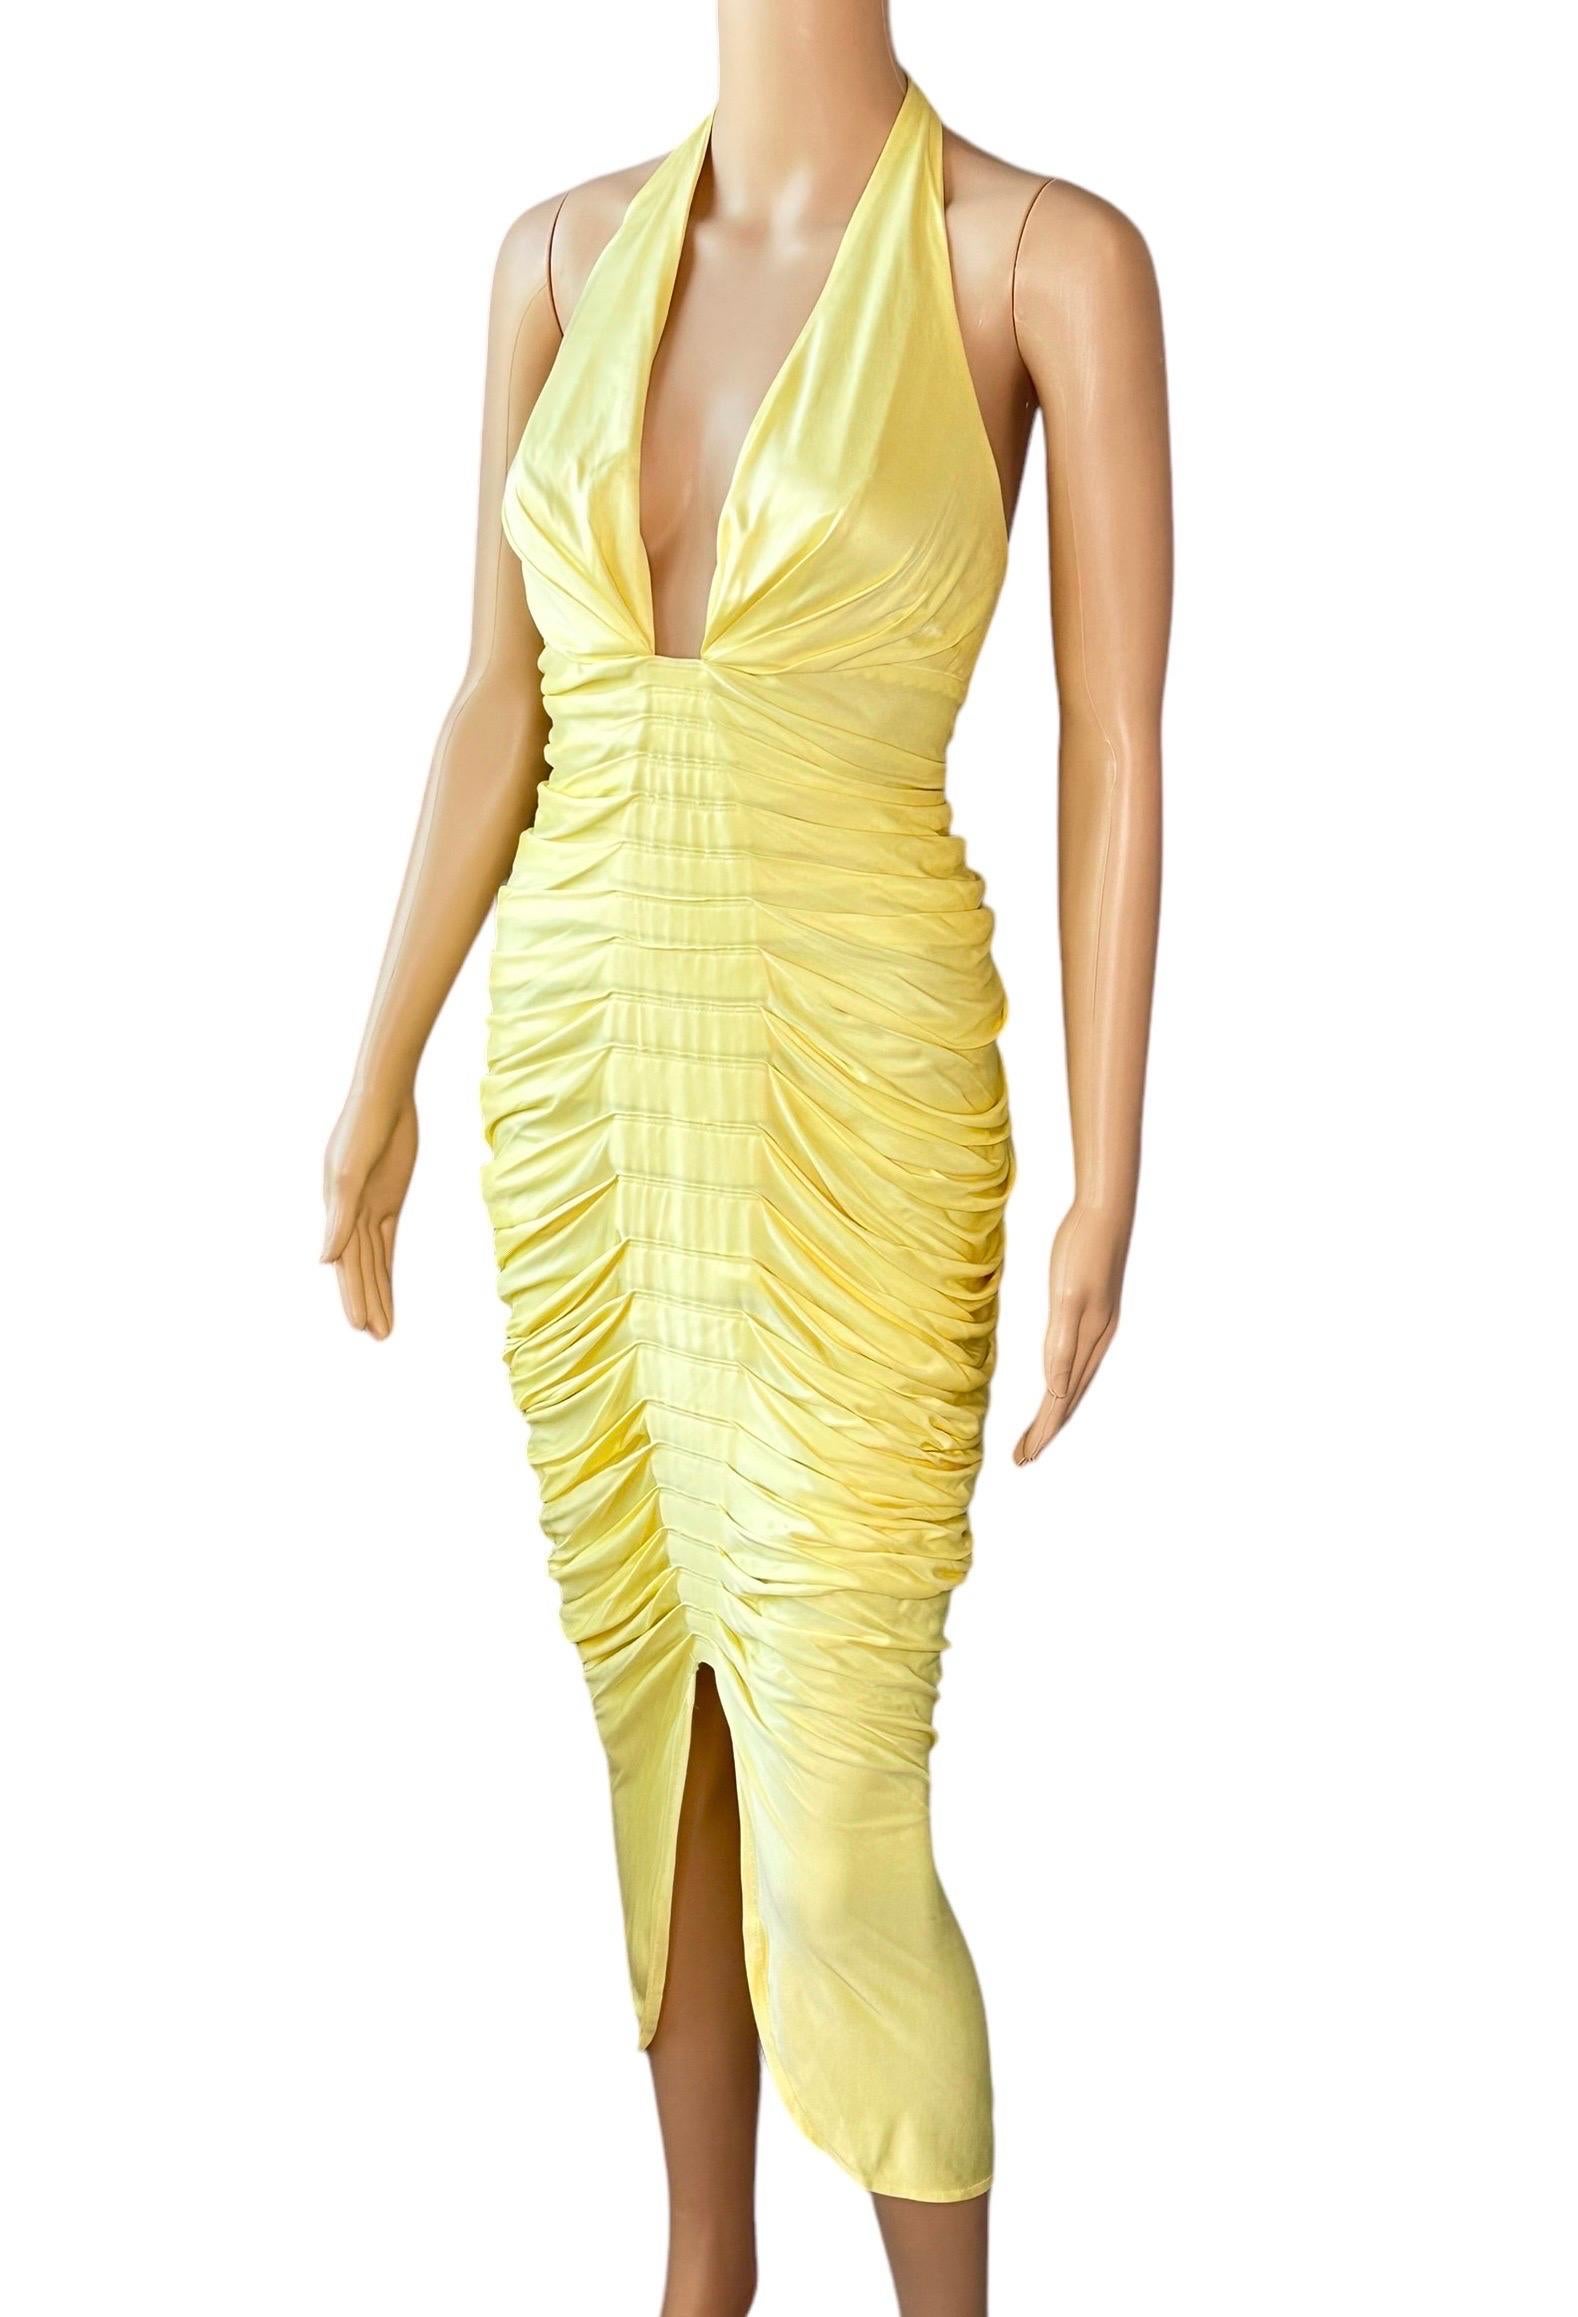 Versace F/S 2005 Laufsteg Tief ausgeschnittenes Hi-Low gerafftes Abendkleid mit offenem Rückenausschnitt 

Größe IT 40

Look 51 aus der Spring 2005 Collection'S

